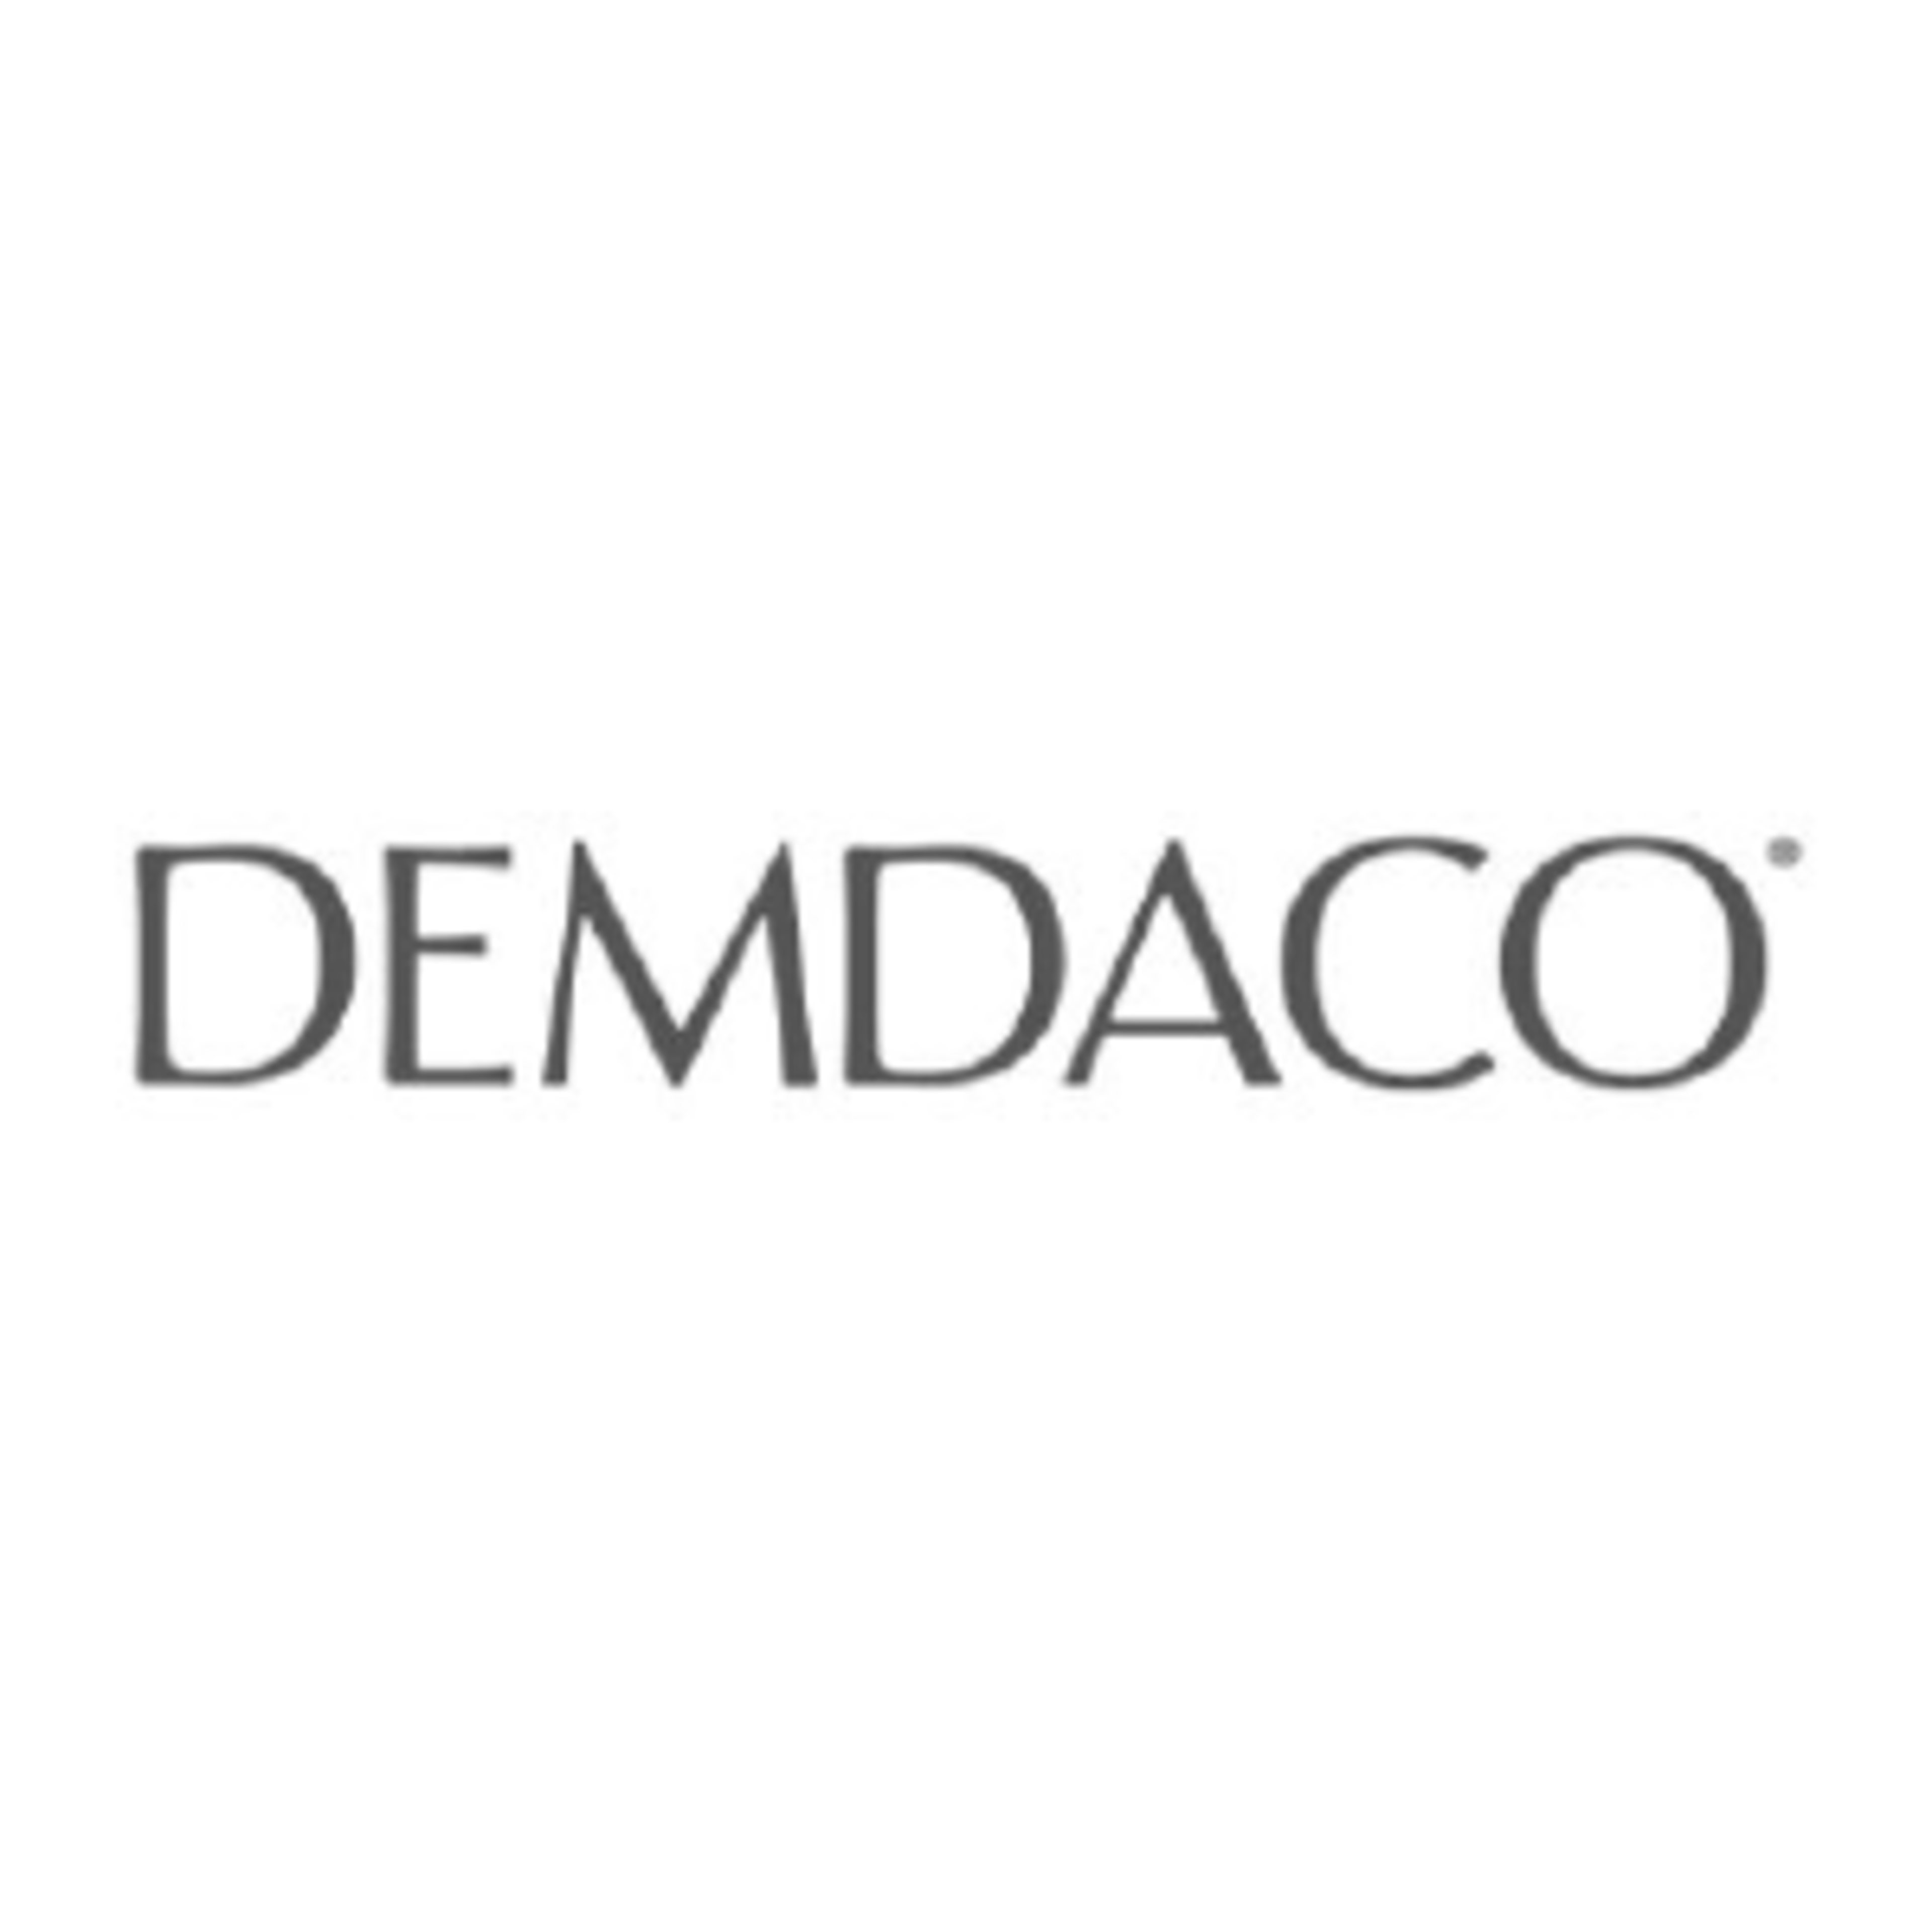 DemdacoCode